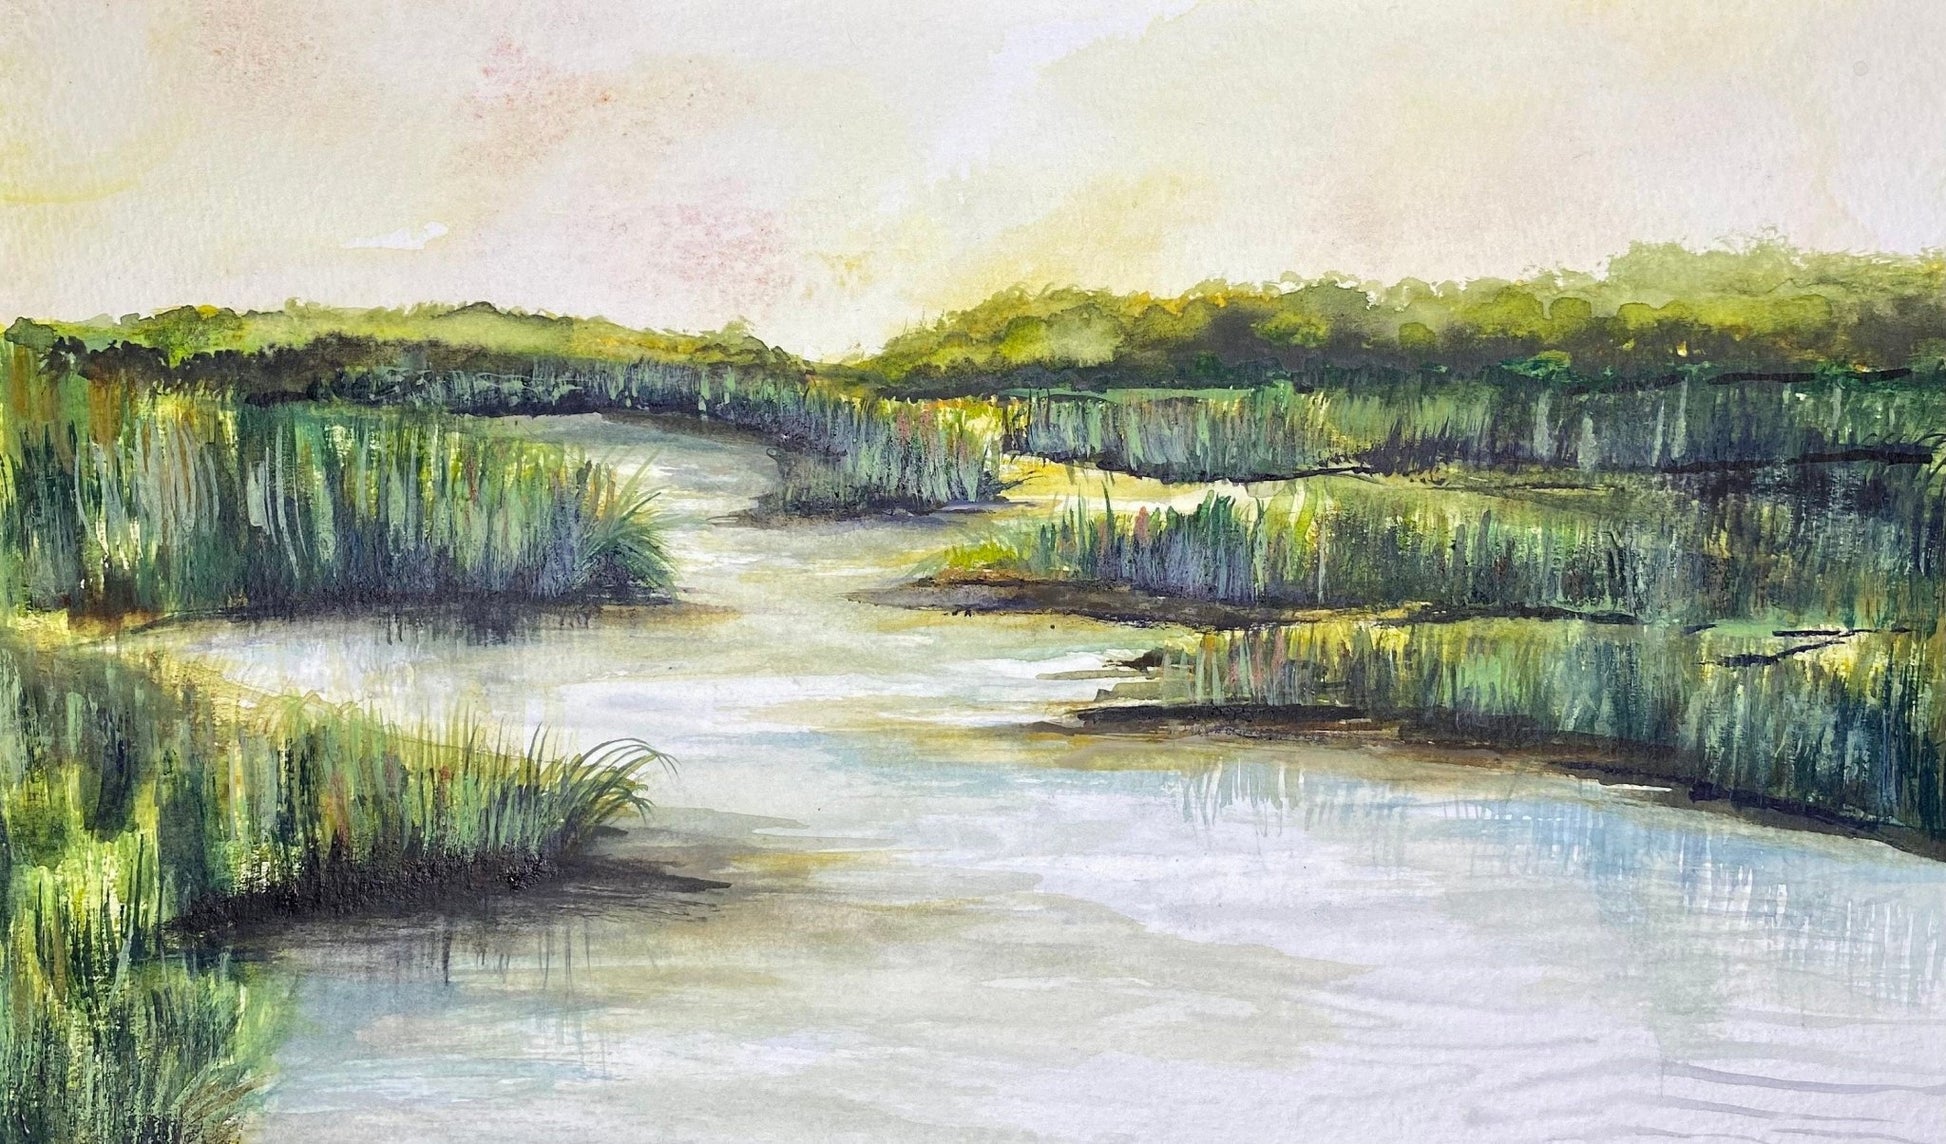 Dusk on The River - Riverlight Art Studio